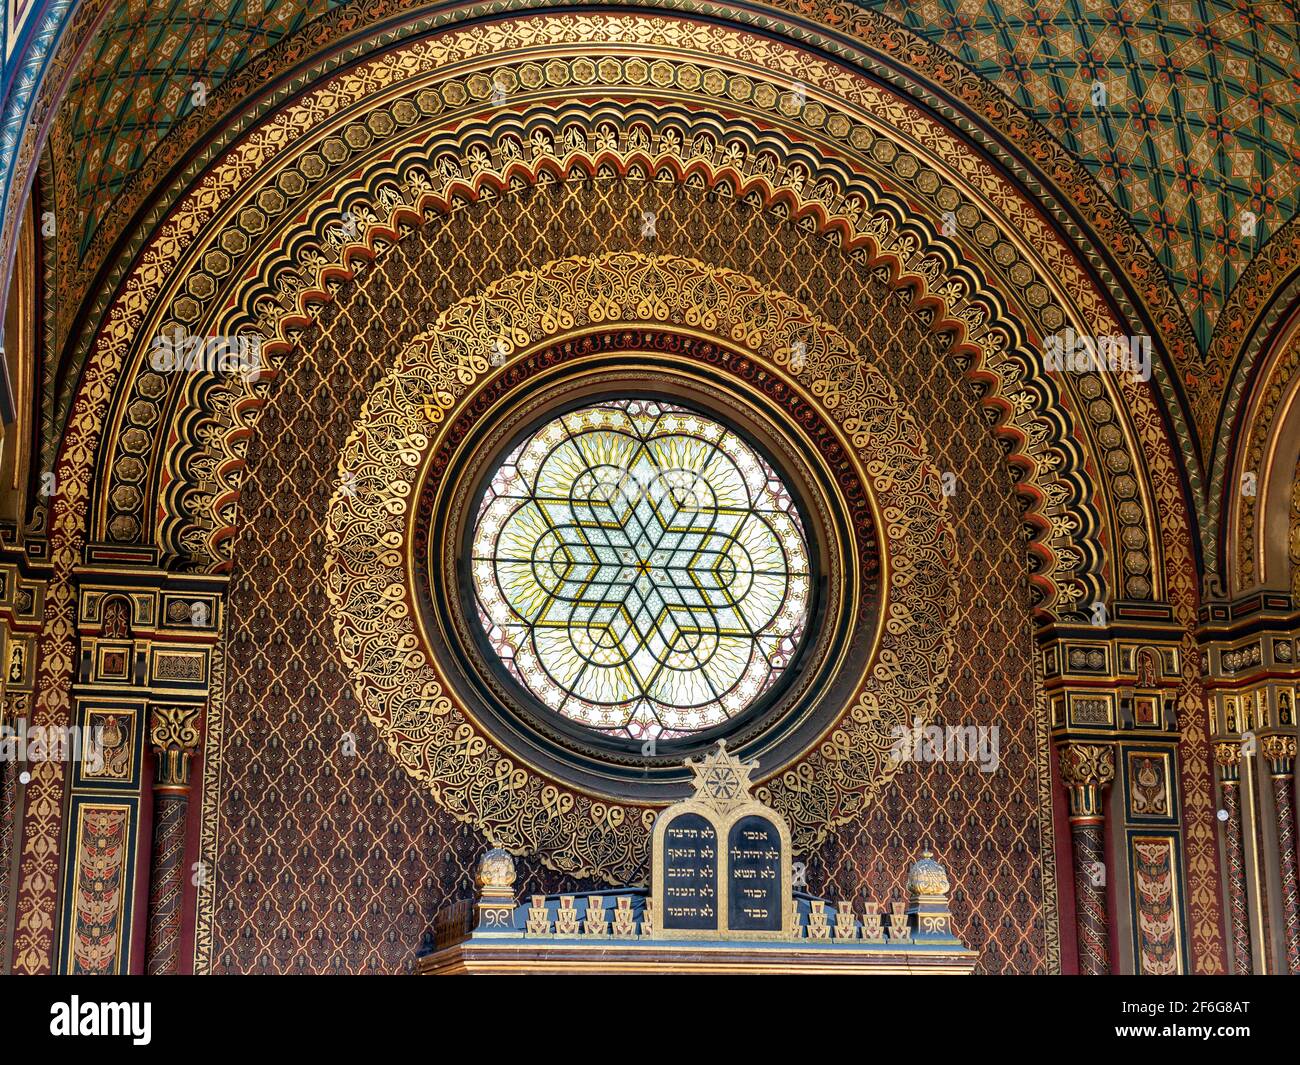 Magen David sopra l'aron ha-kodesh nella sinagoga spagnola di Praga: Dettaglio della massiccia finestra circolare in vetro colorato e le decorazioni circostanti in foglia d'oro nella sinagoga spagnola di Praga. Foto Stock